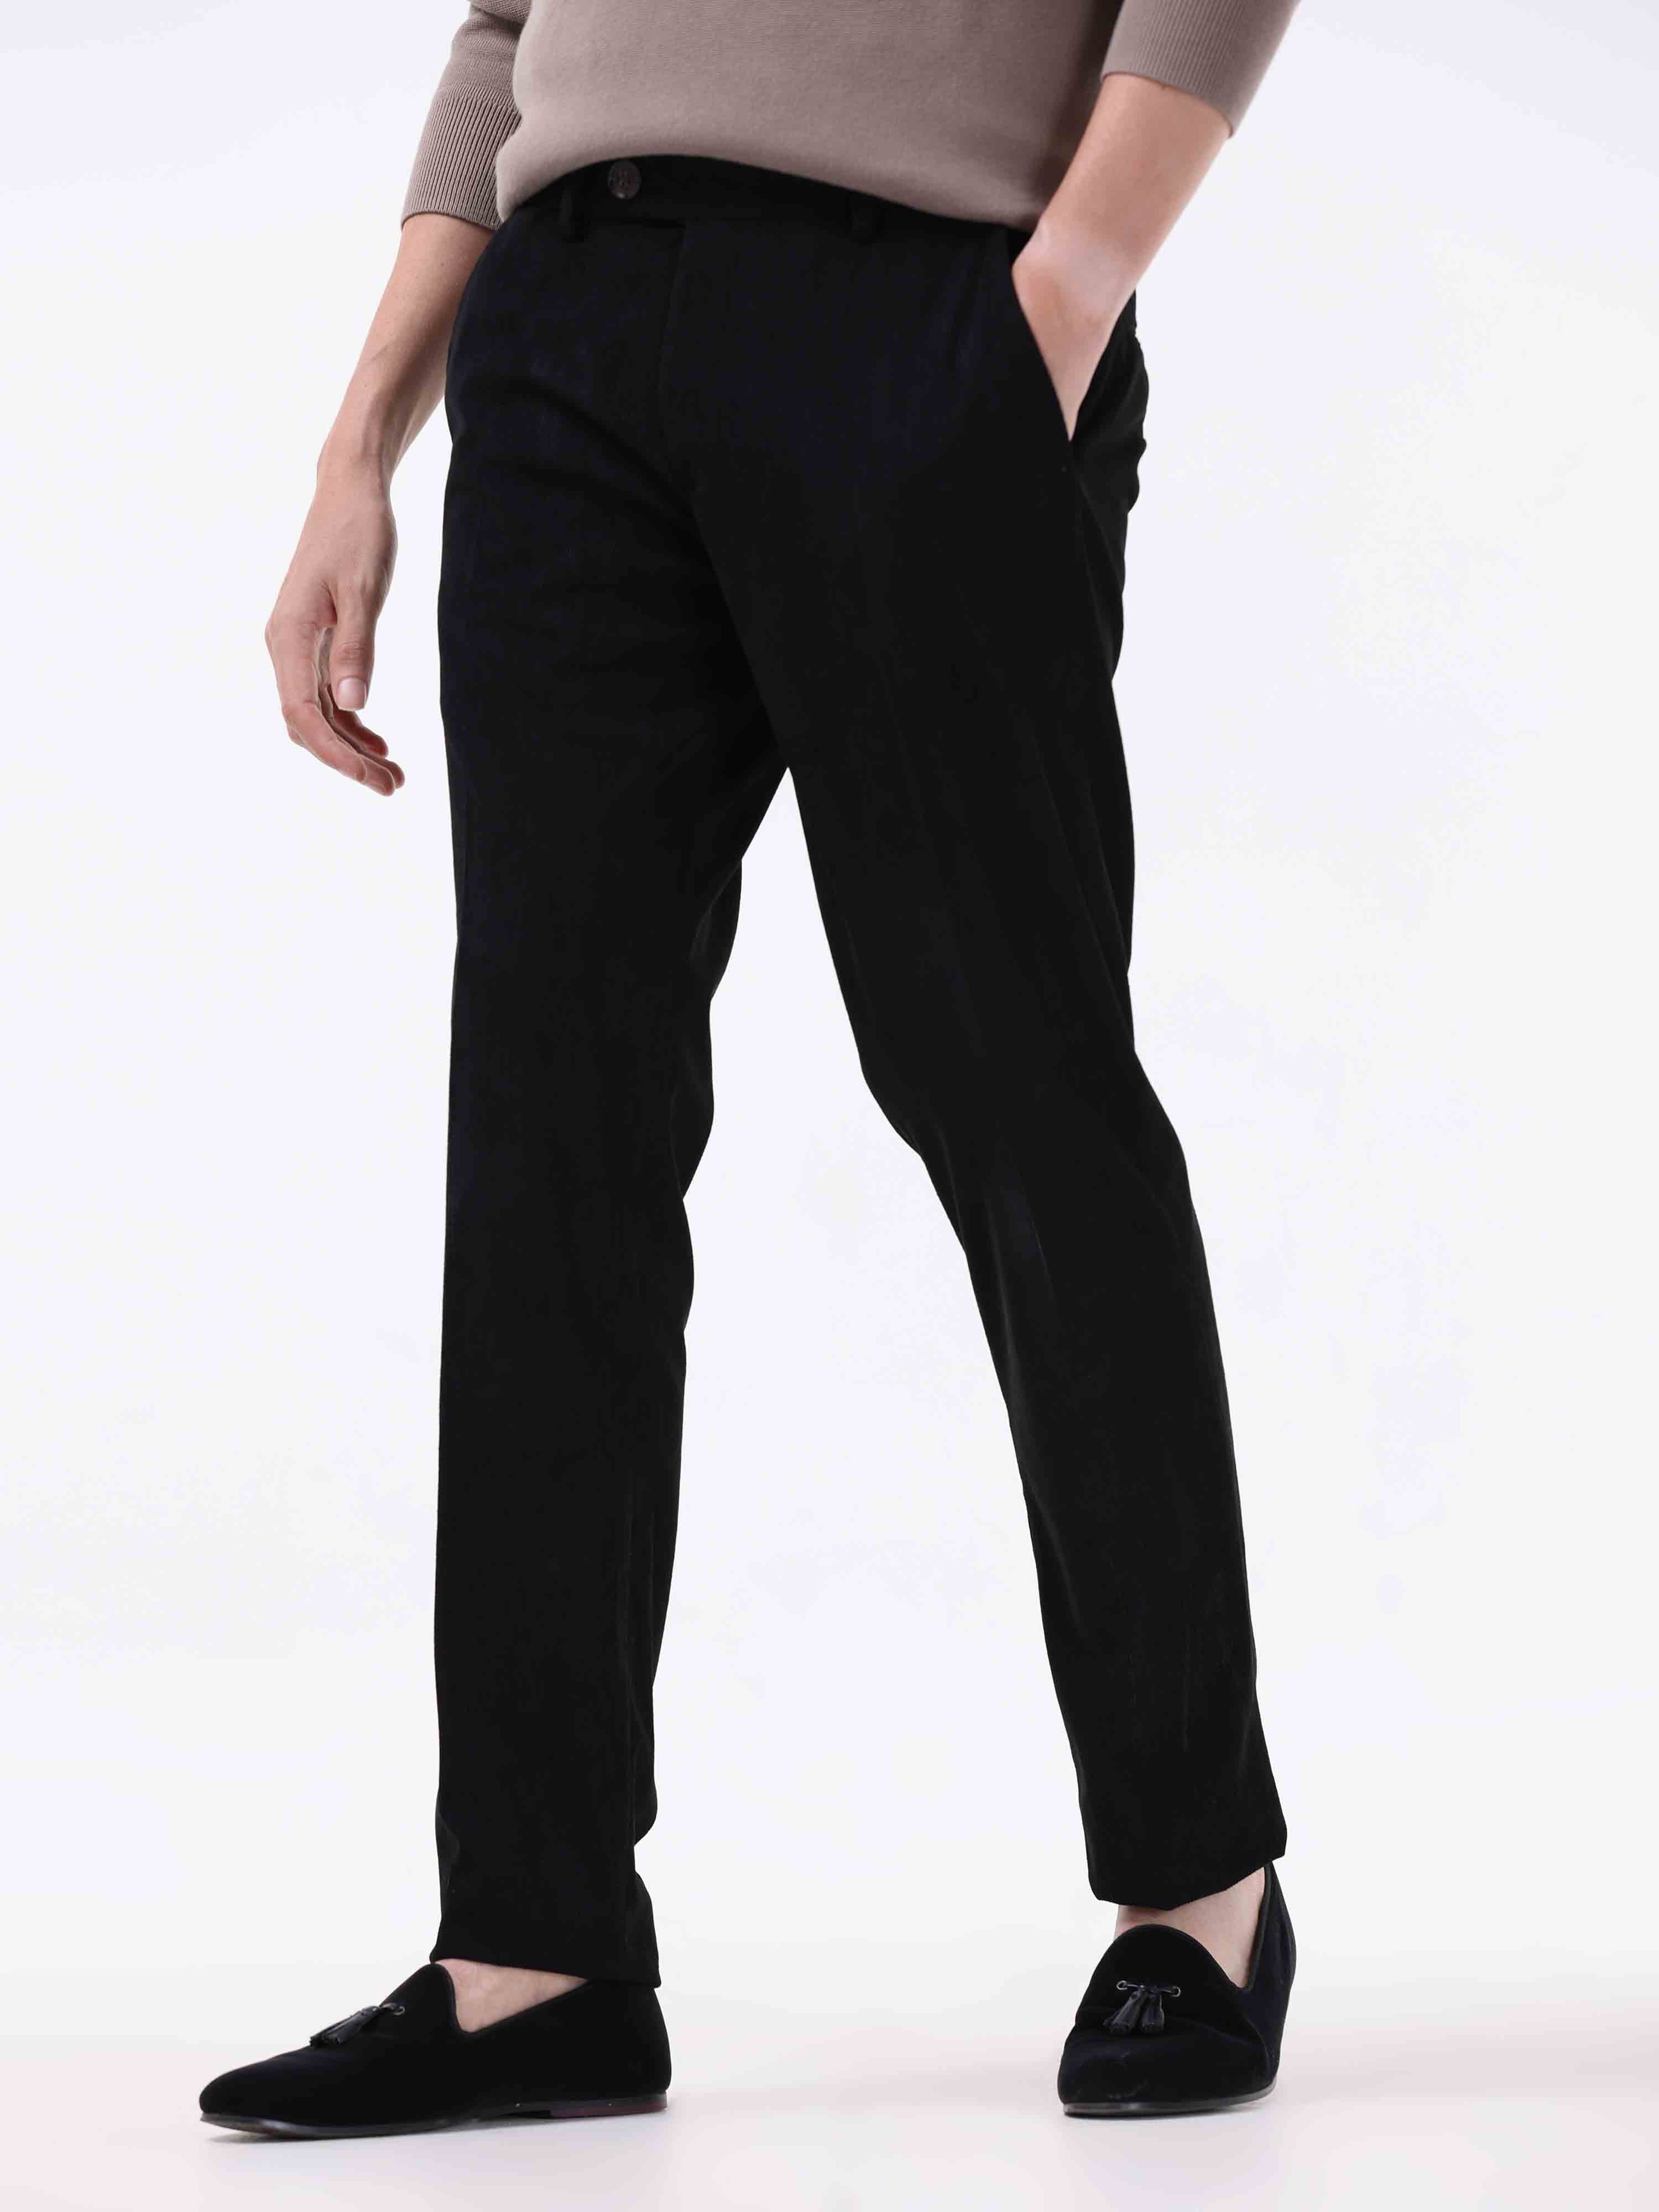 ZXHACSJ Fashion Men's Slim Corduroy Trousers Business Suit Pants Casual  Golf Pants Coffee S - Walmart.com